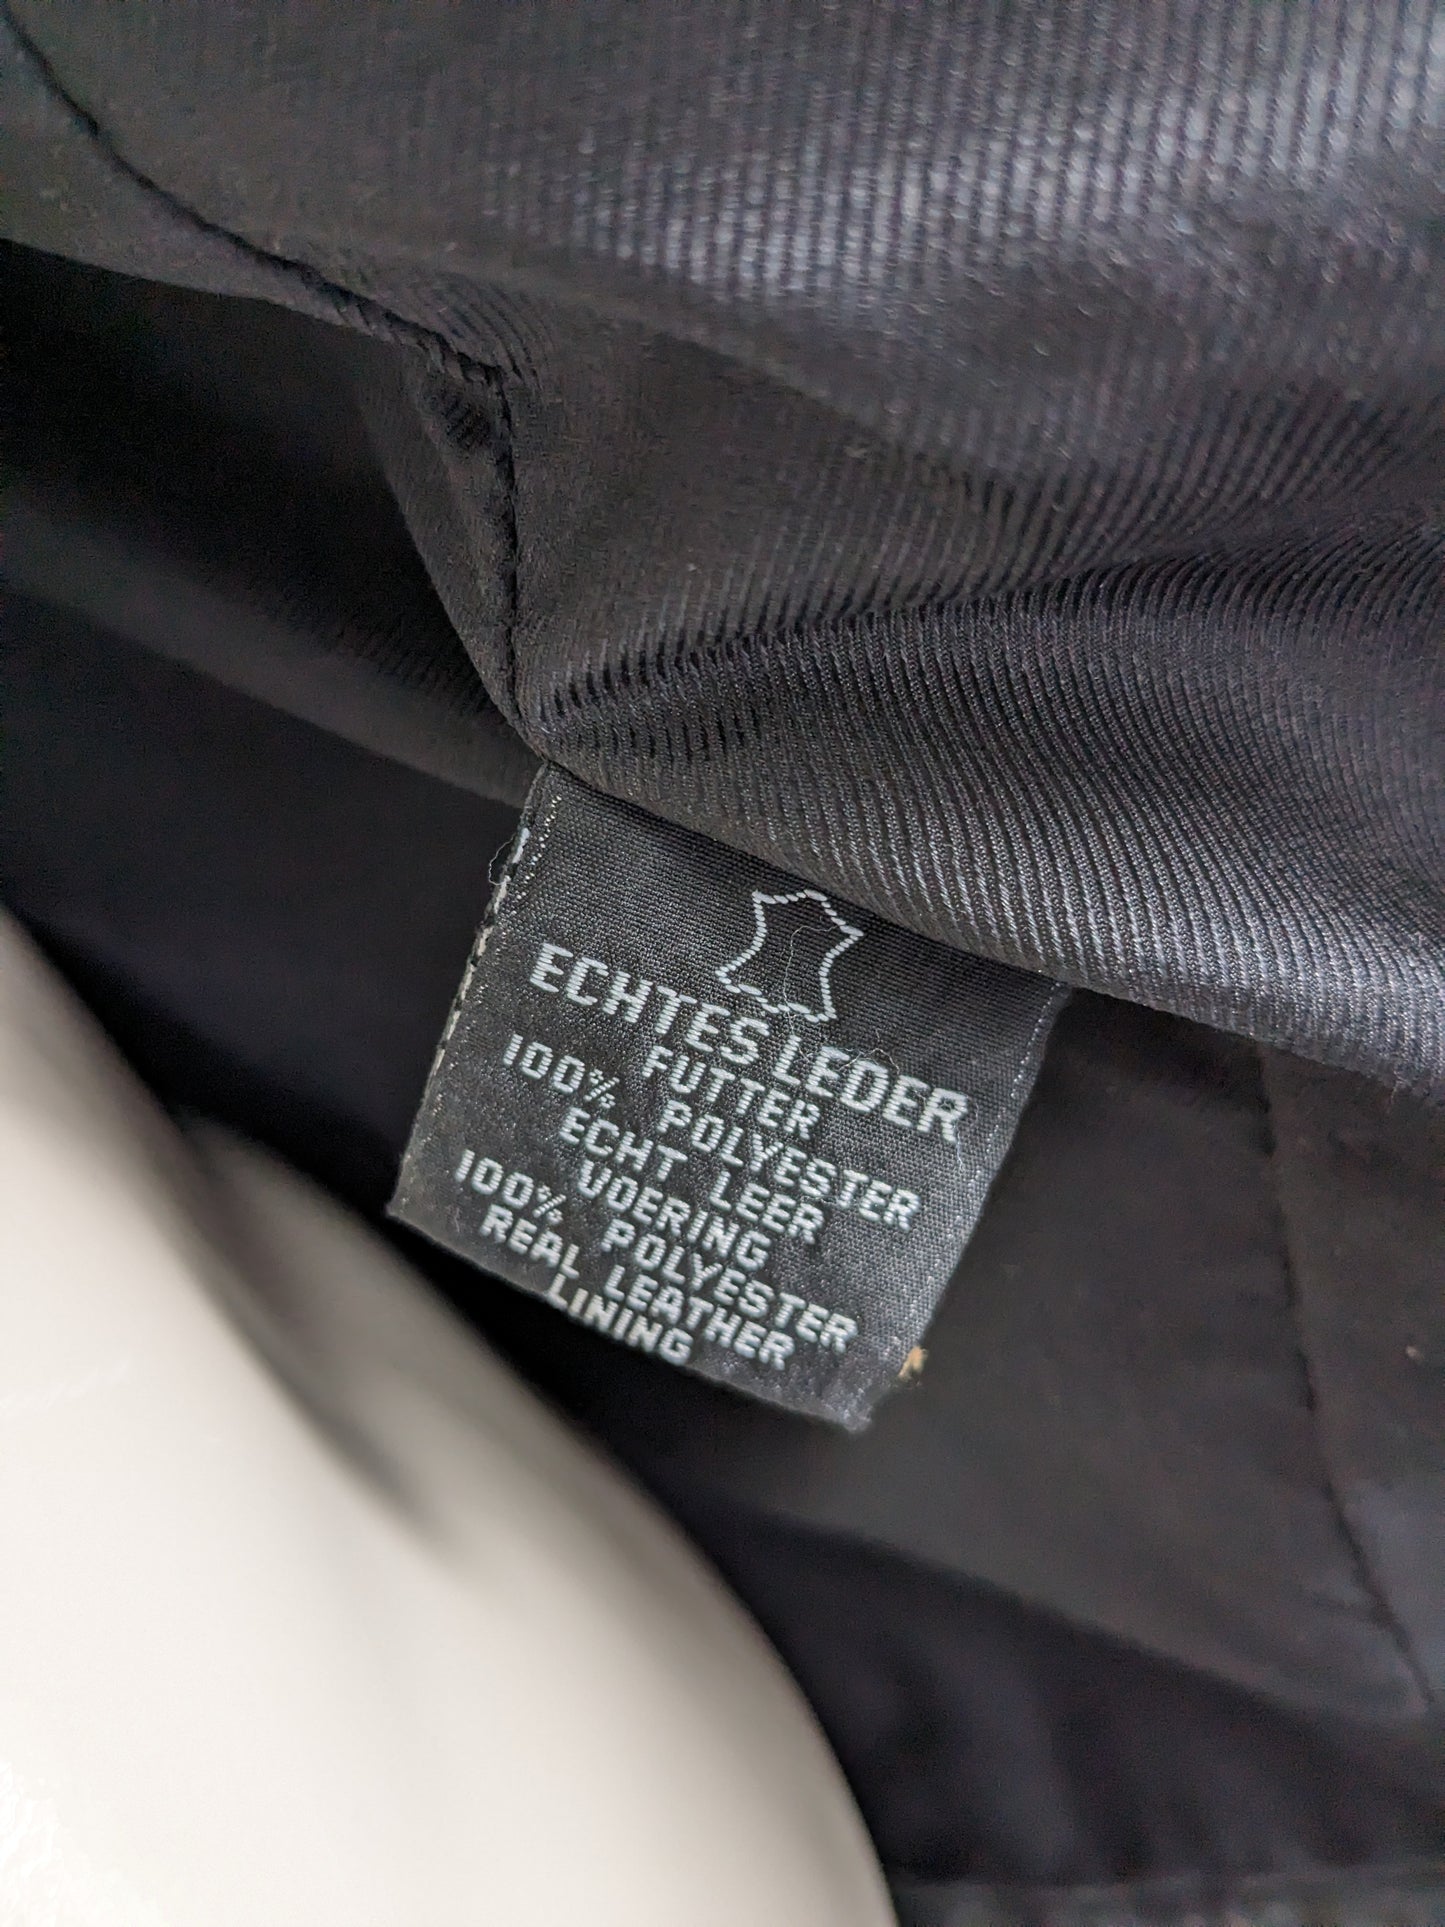 Giacca / giacca di pelle con bottoni. Colorato nero. Taglia XL.